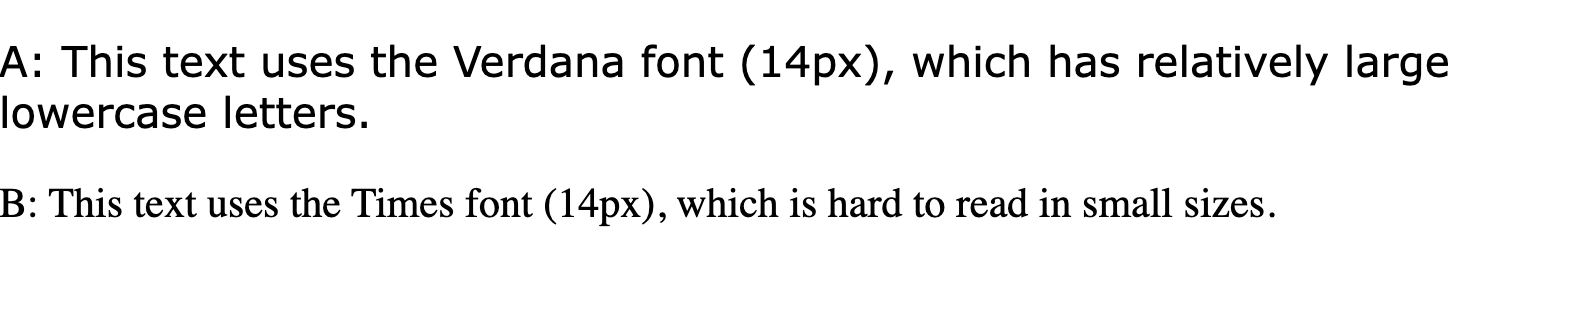 &#39;이 텍스트는 비교적 큰 소문자가 사용된 verdana 글꼴 (14px)을 사용합니다.&#39; 및 &#39;Times 글꼴 (14px)을 사용합니다. 이 글꼴은 작은 크기에서 읽기 어렵습니다.&#39; 